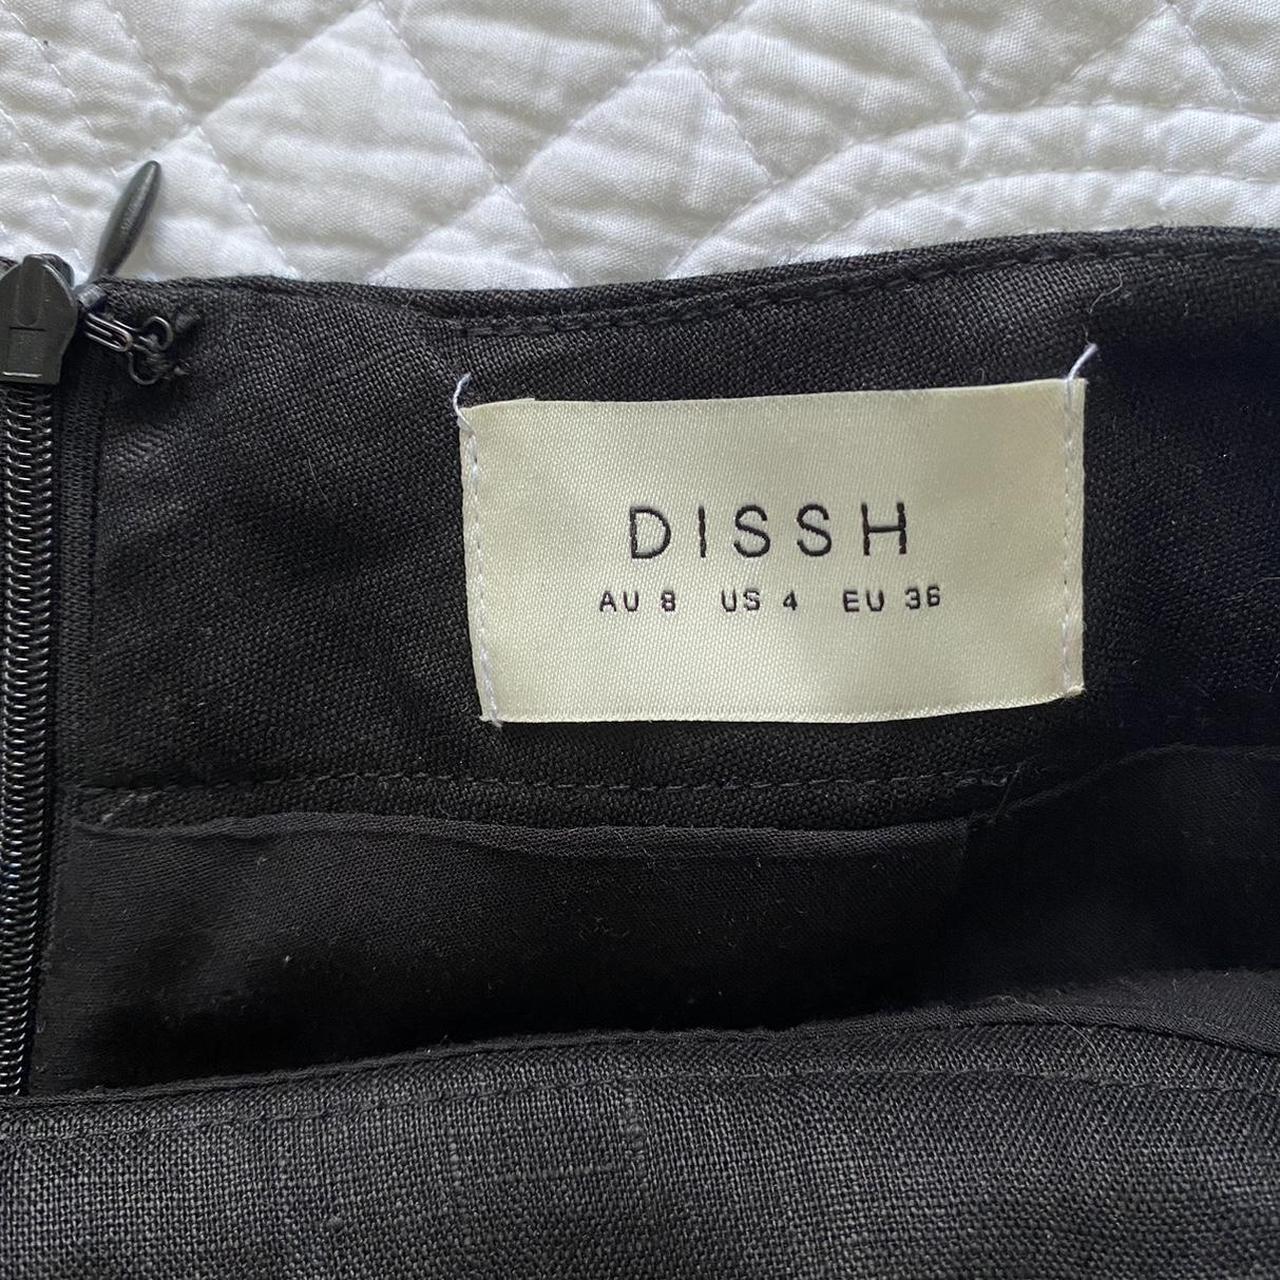 DISSH Flick Black Linen Pant Size: AU 8/UK 8 RRP... - Depop